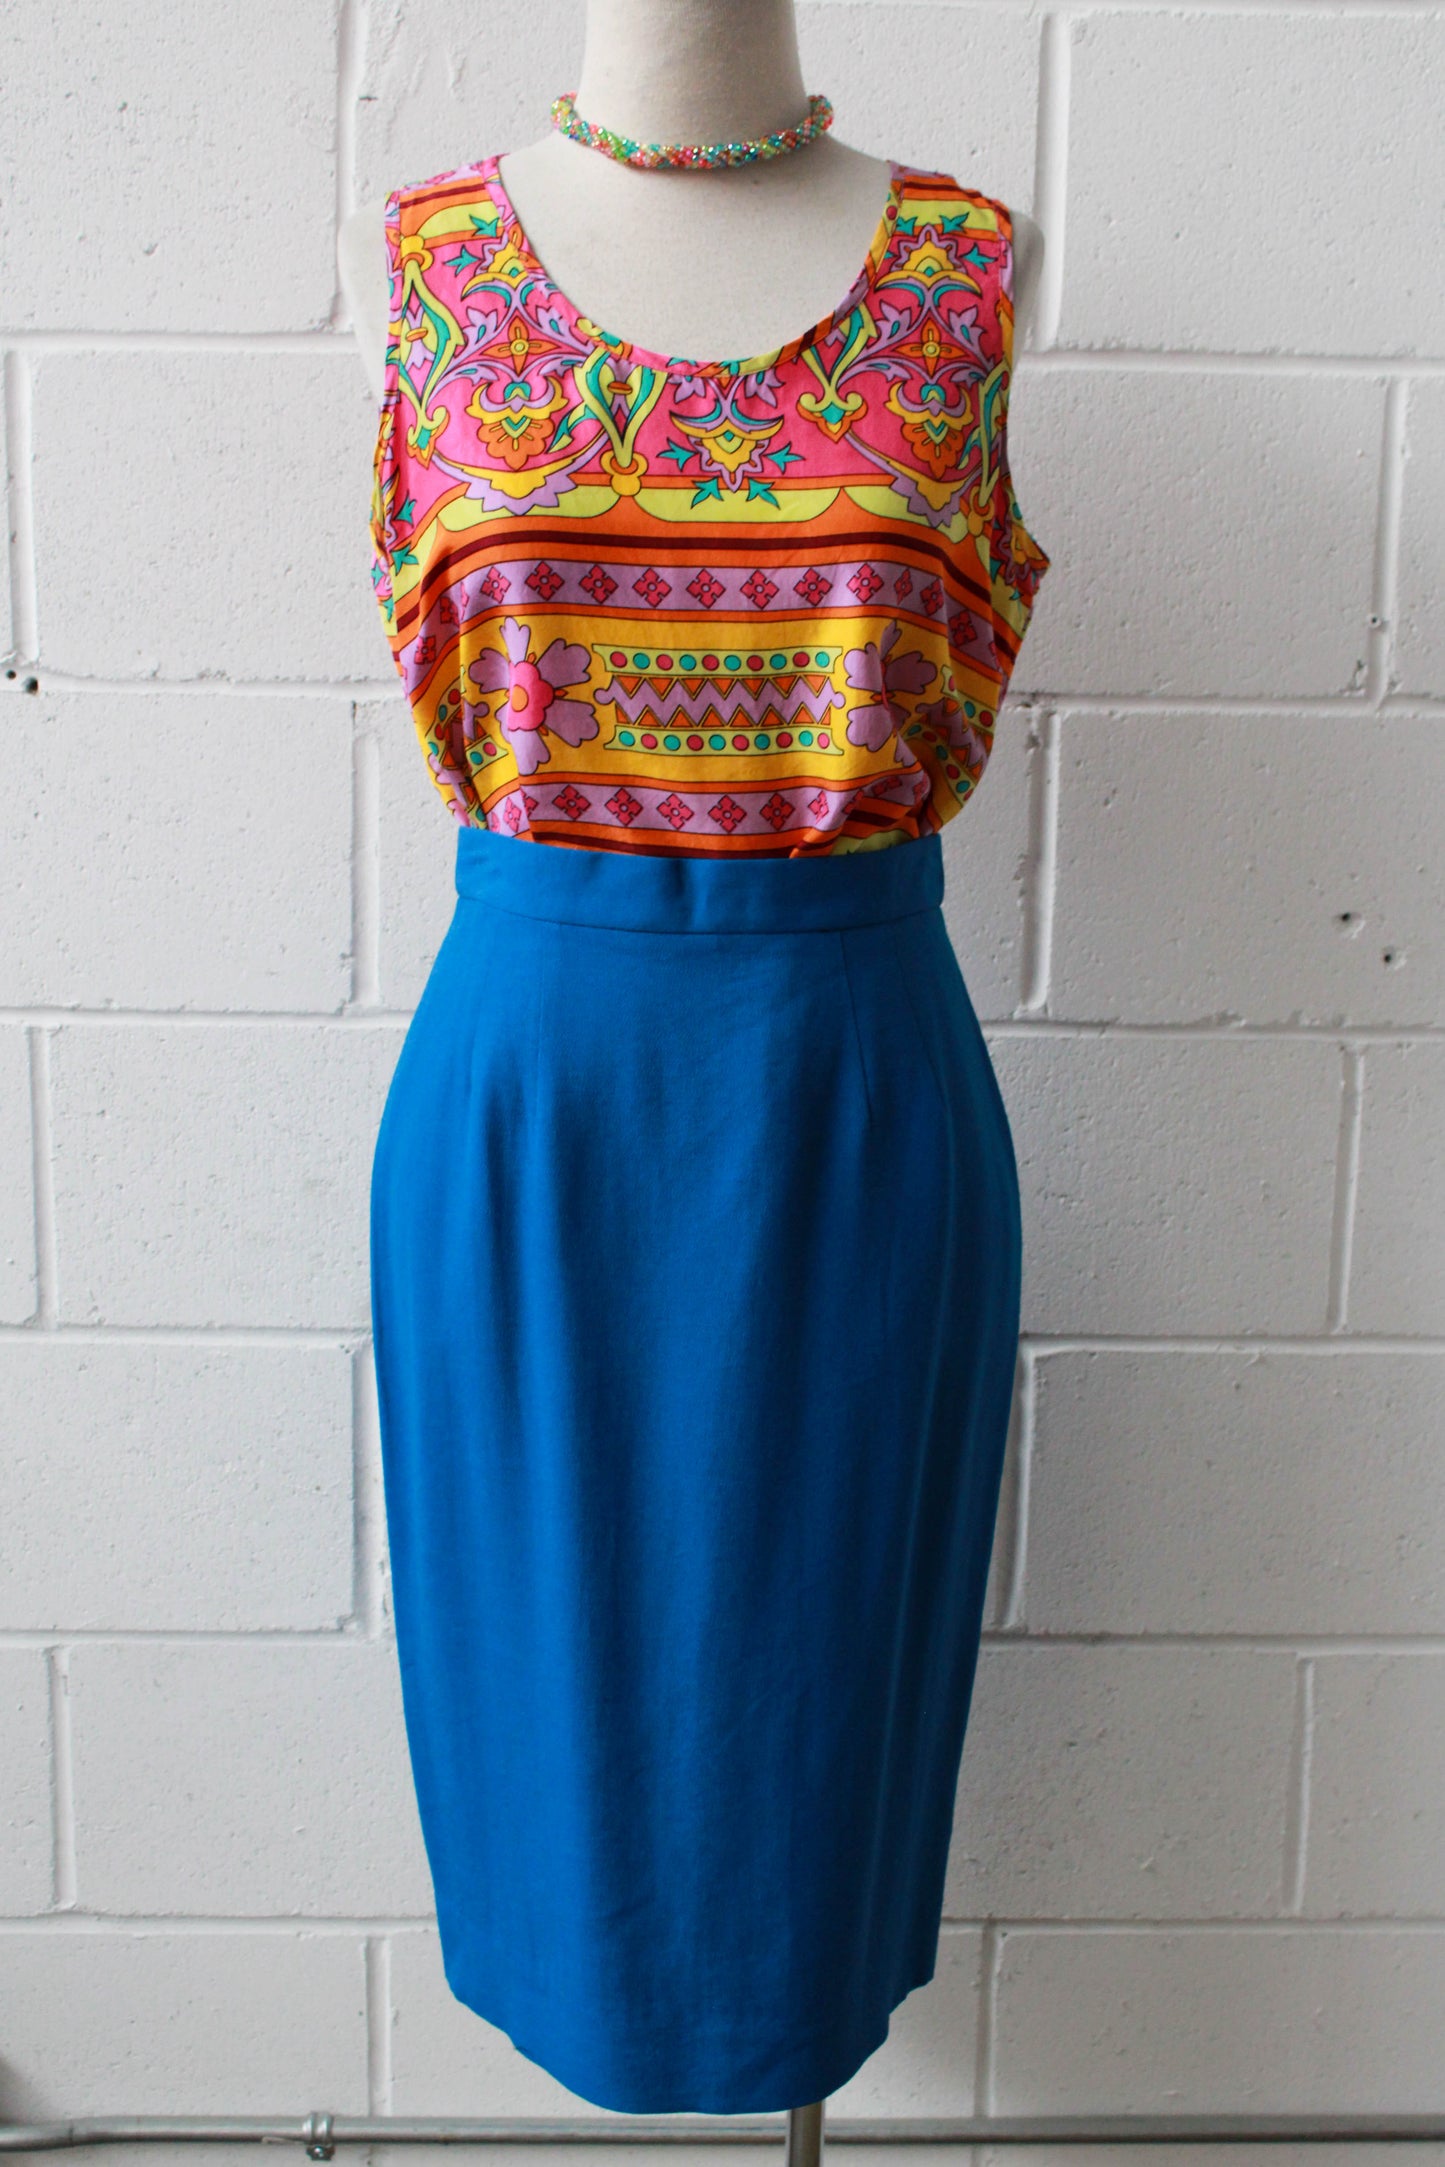 True Blue Pencil Skirt, Waist 26"